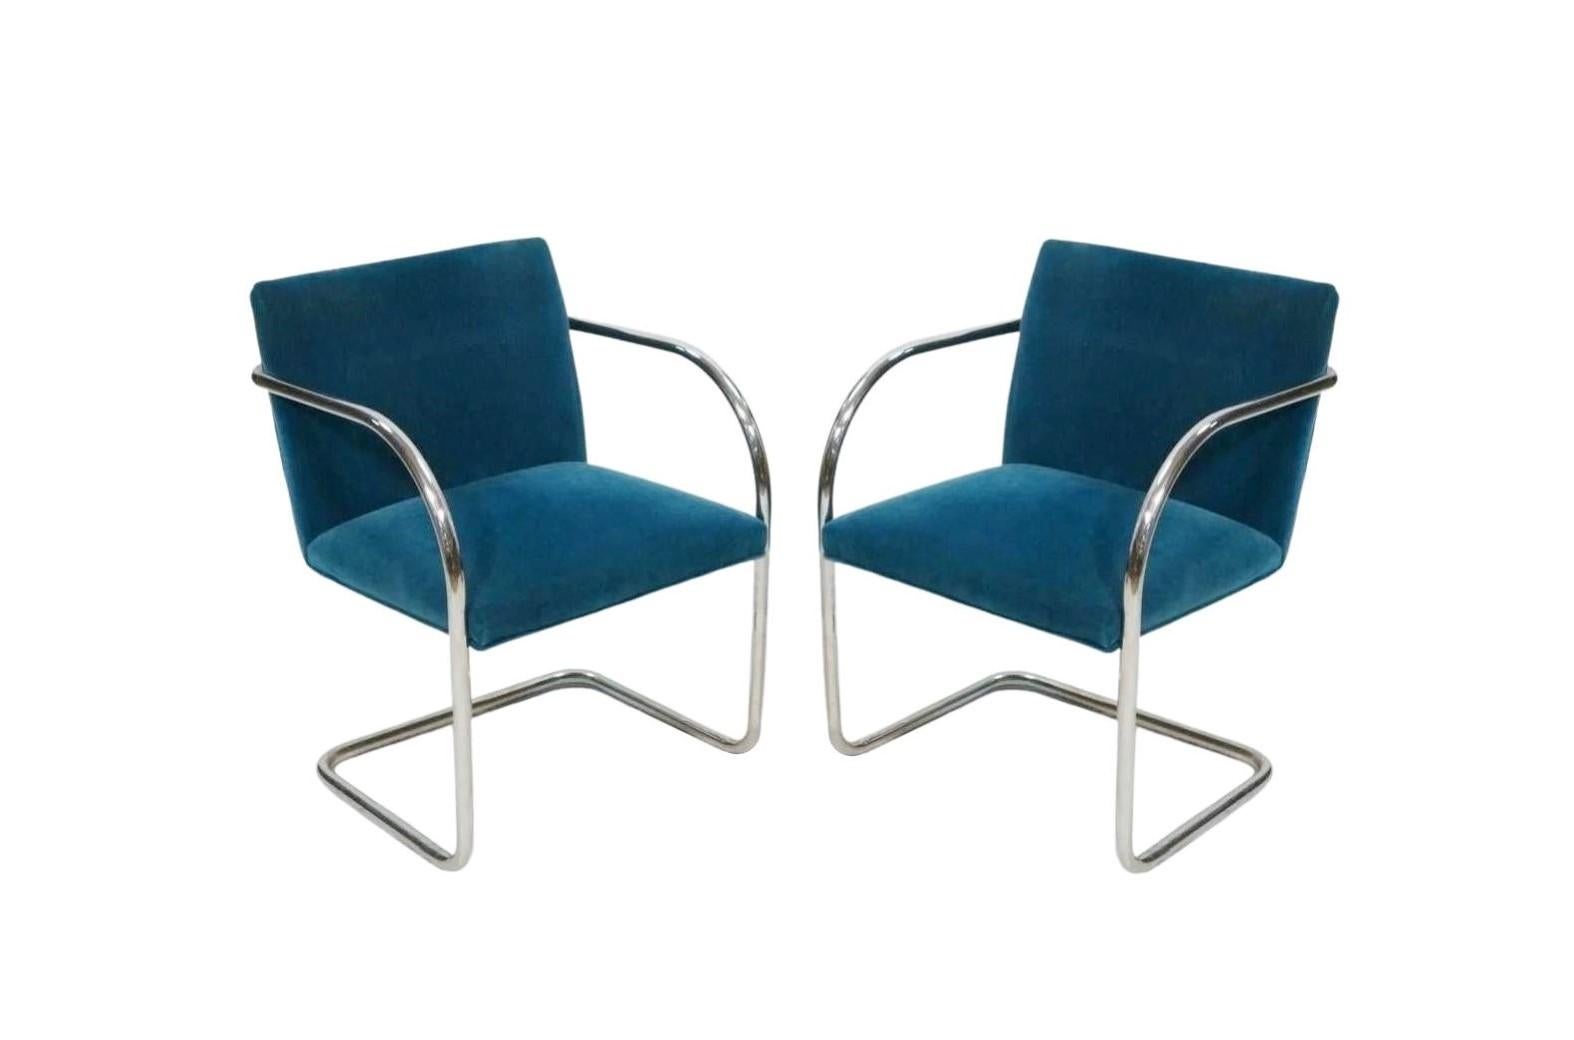 La définition du minimalisme dans un design singulier, réalisé par le grand Ludwig Mies van der Rohe en 1929 ; la chaise Design/One est exactement cela, mondialement connue pour sa forme architecturale moderne et son design en porte-à-faux. Le